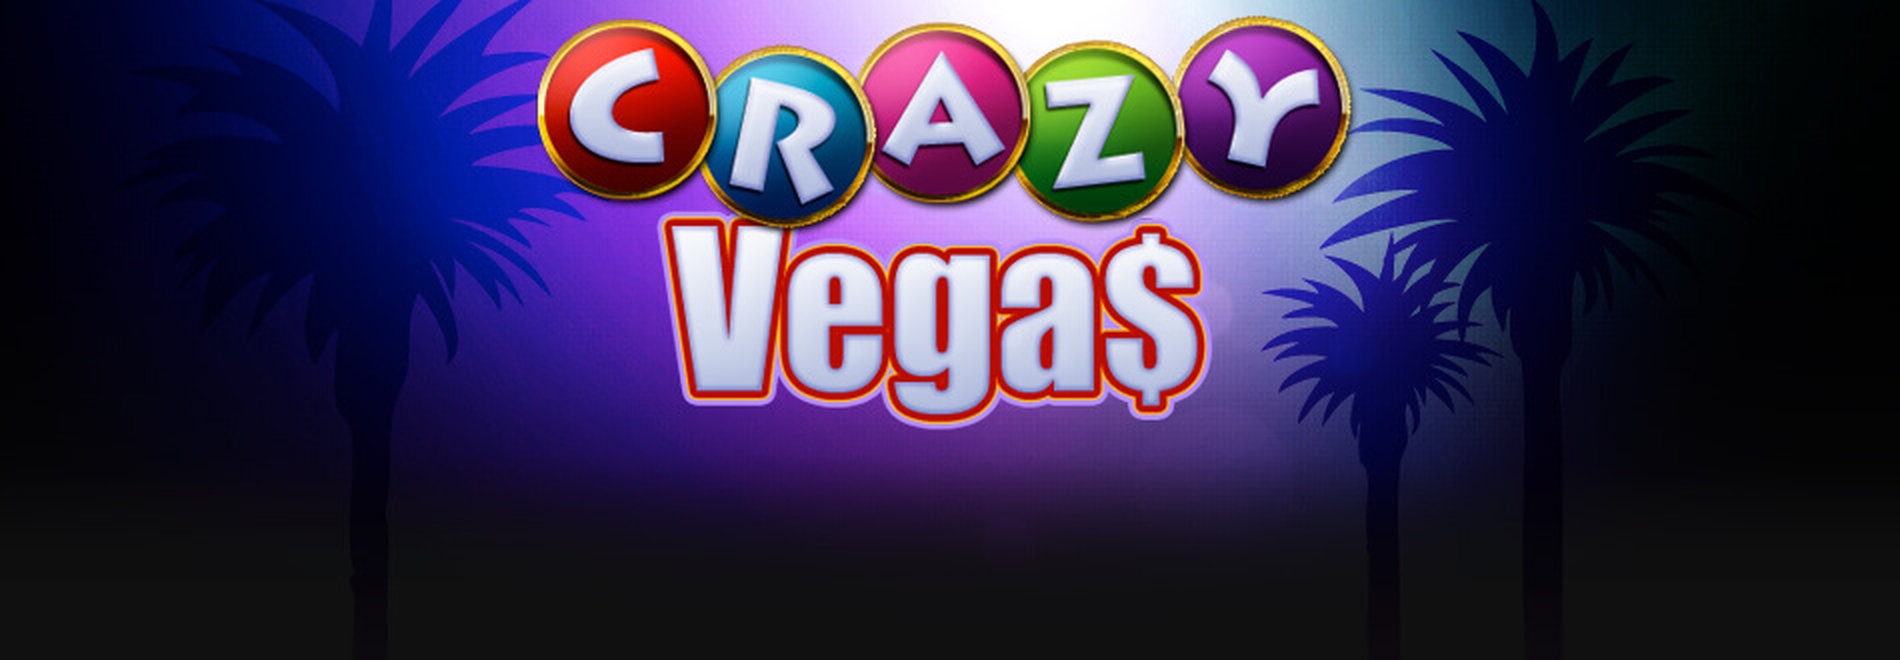 Crazy Vegas demo